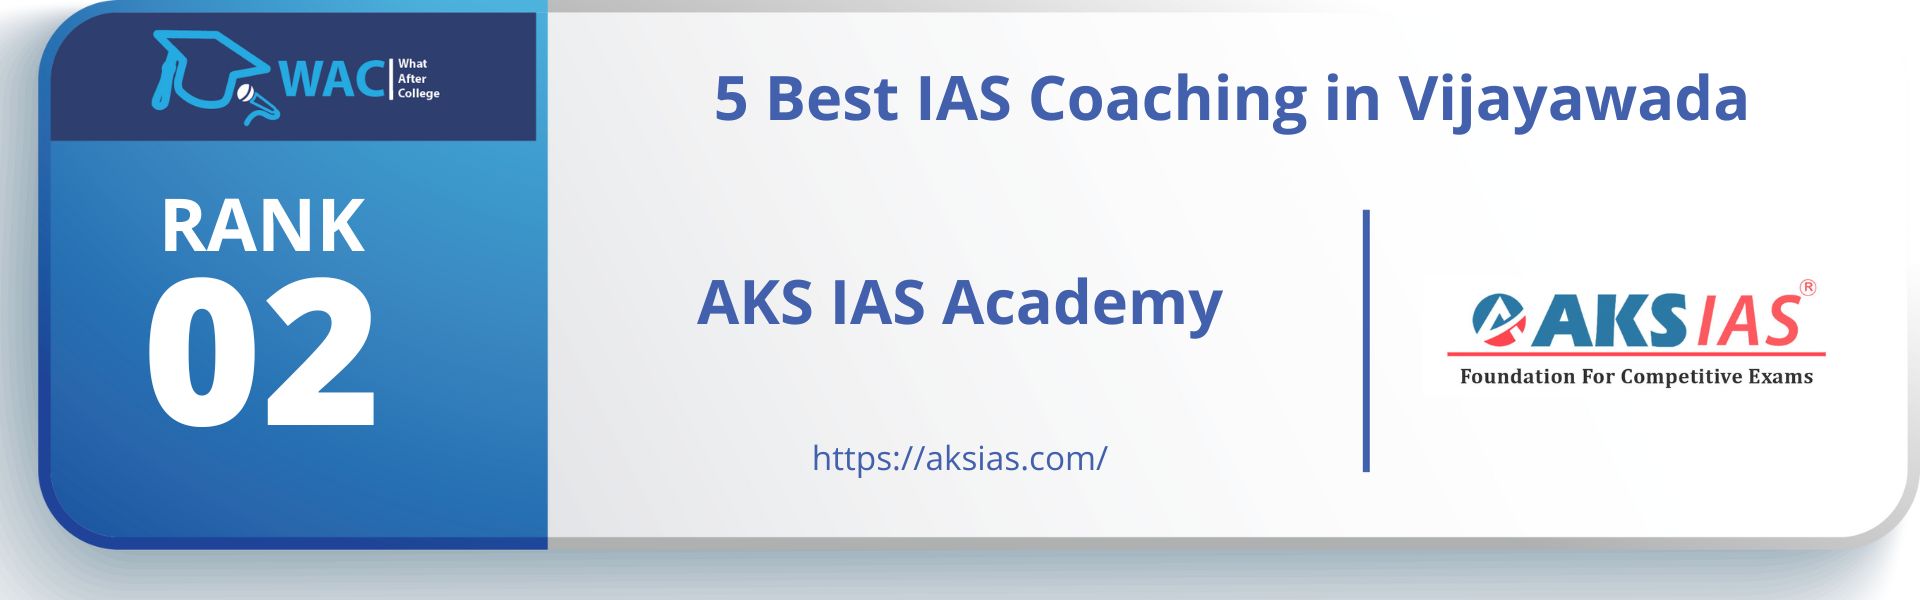 IAS Coaching in Vijayawada